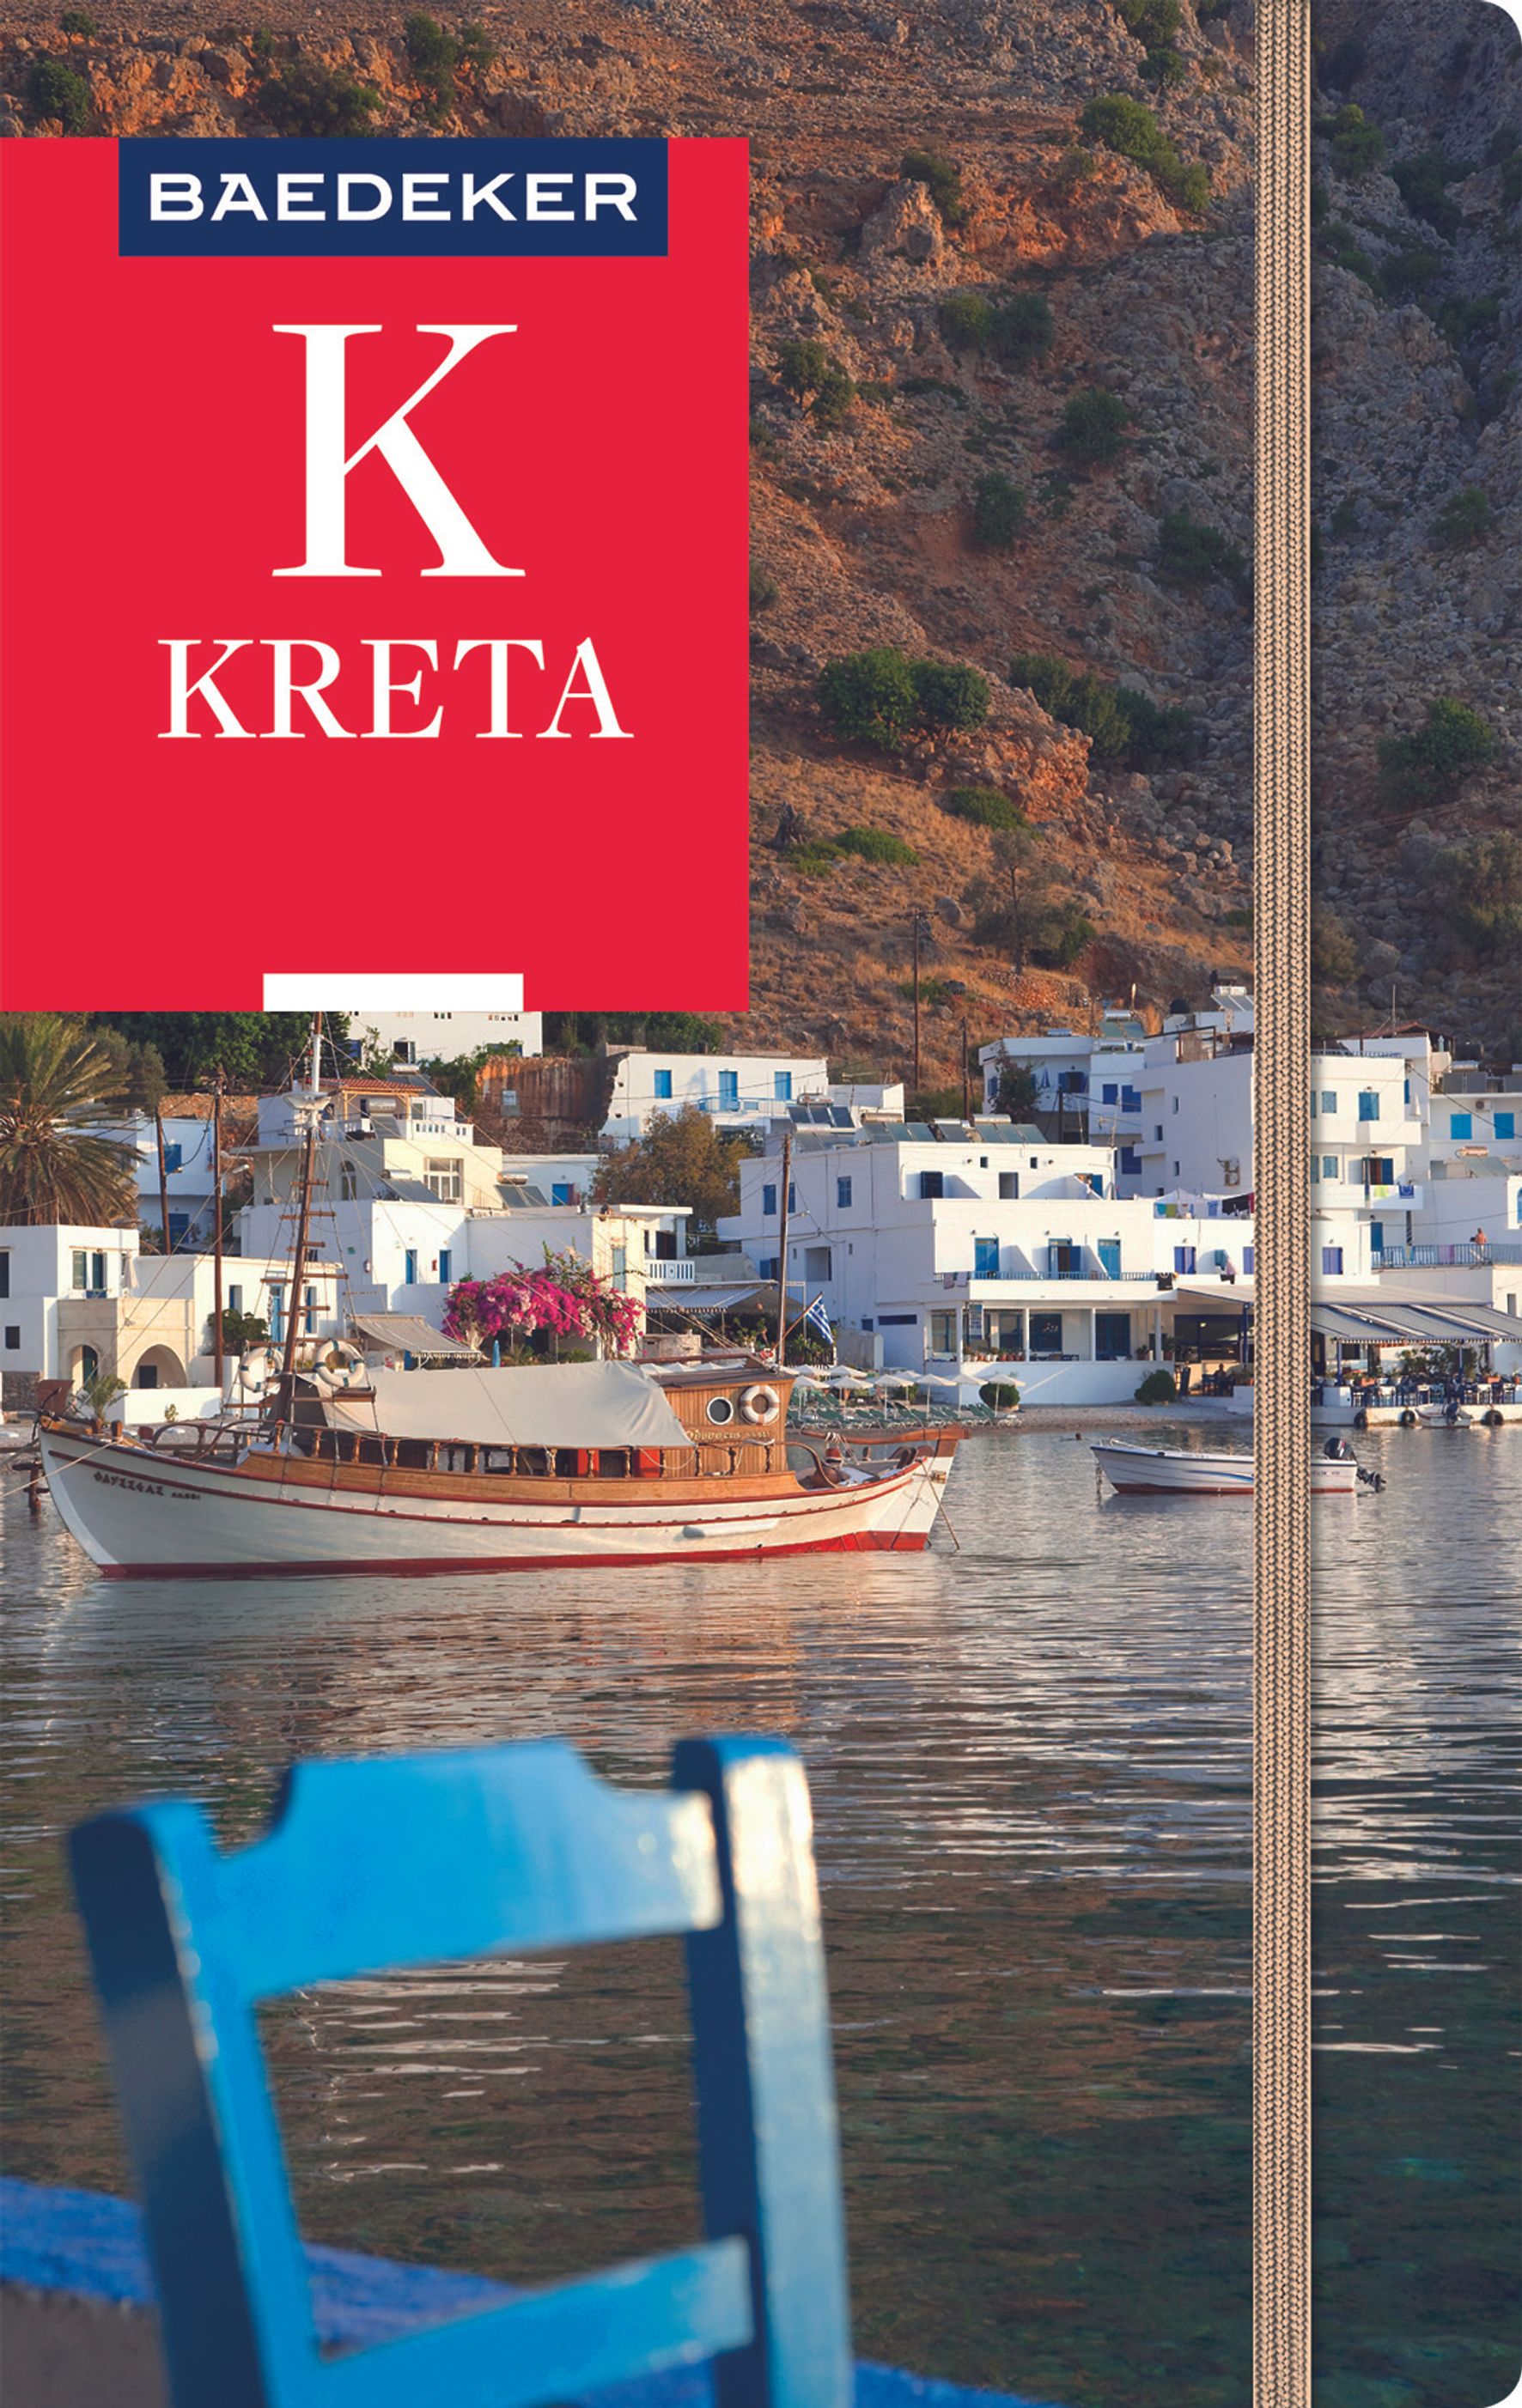 Baedeker Kreta (eBook)